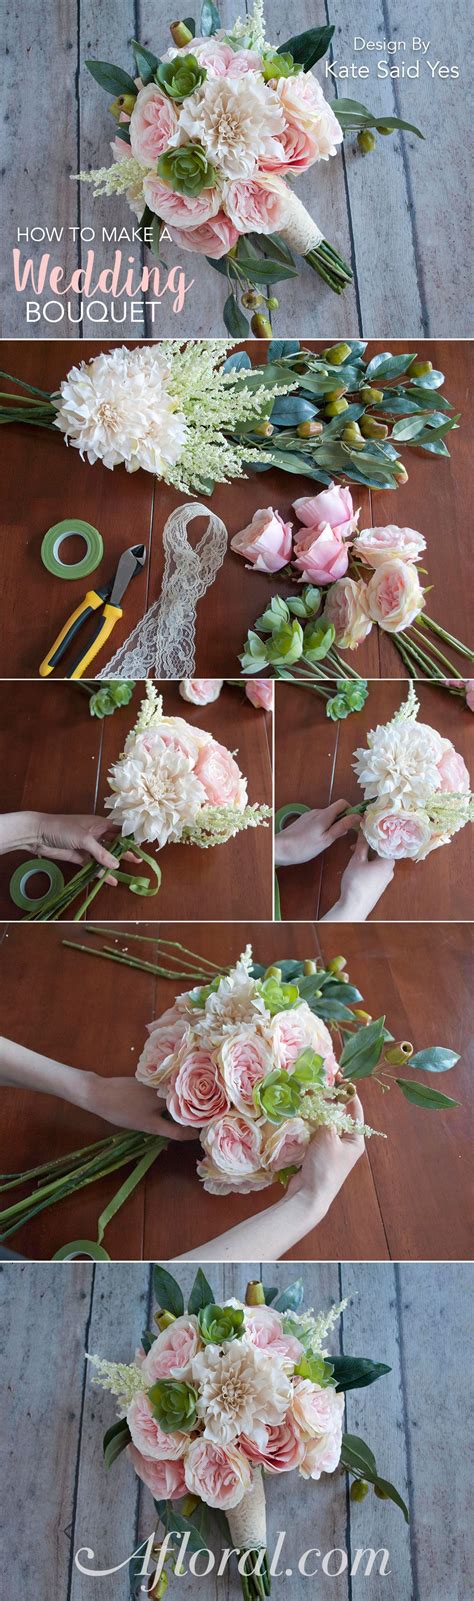 How To Make A Wedding Bouquet Diy Wedding Flowers Diy Wedding